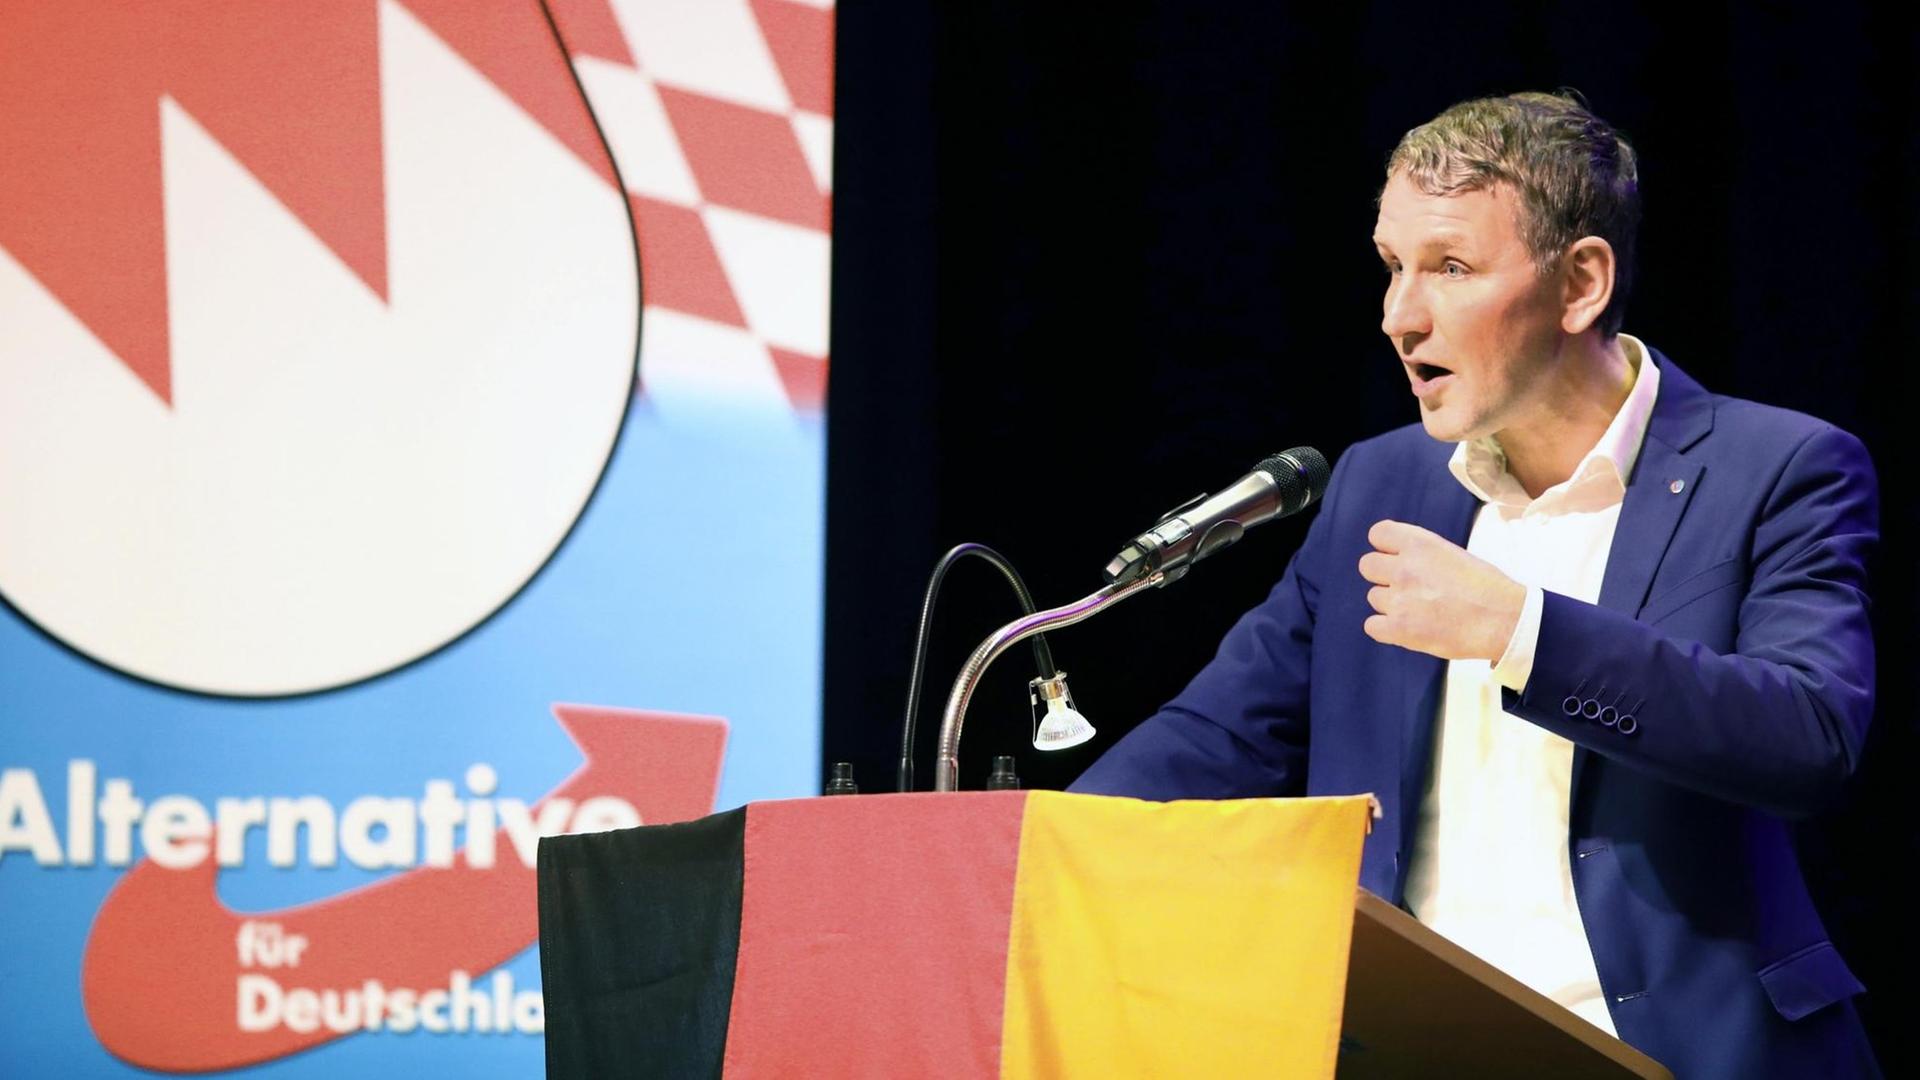 Der AfD-Politiker Björn Höcke steht an einem Redner-Pult mit Deutschland-Fahne und redet.